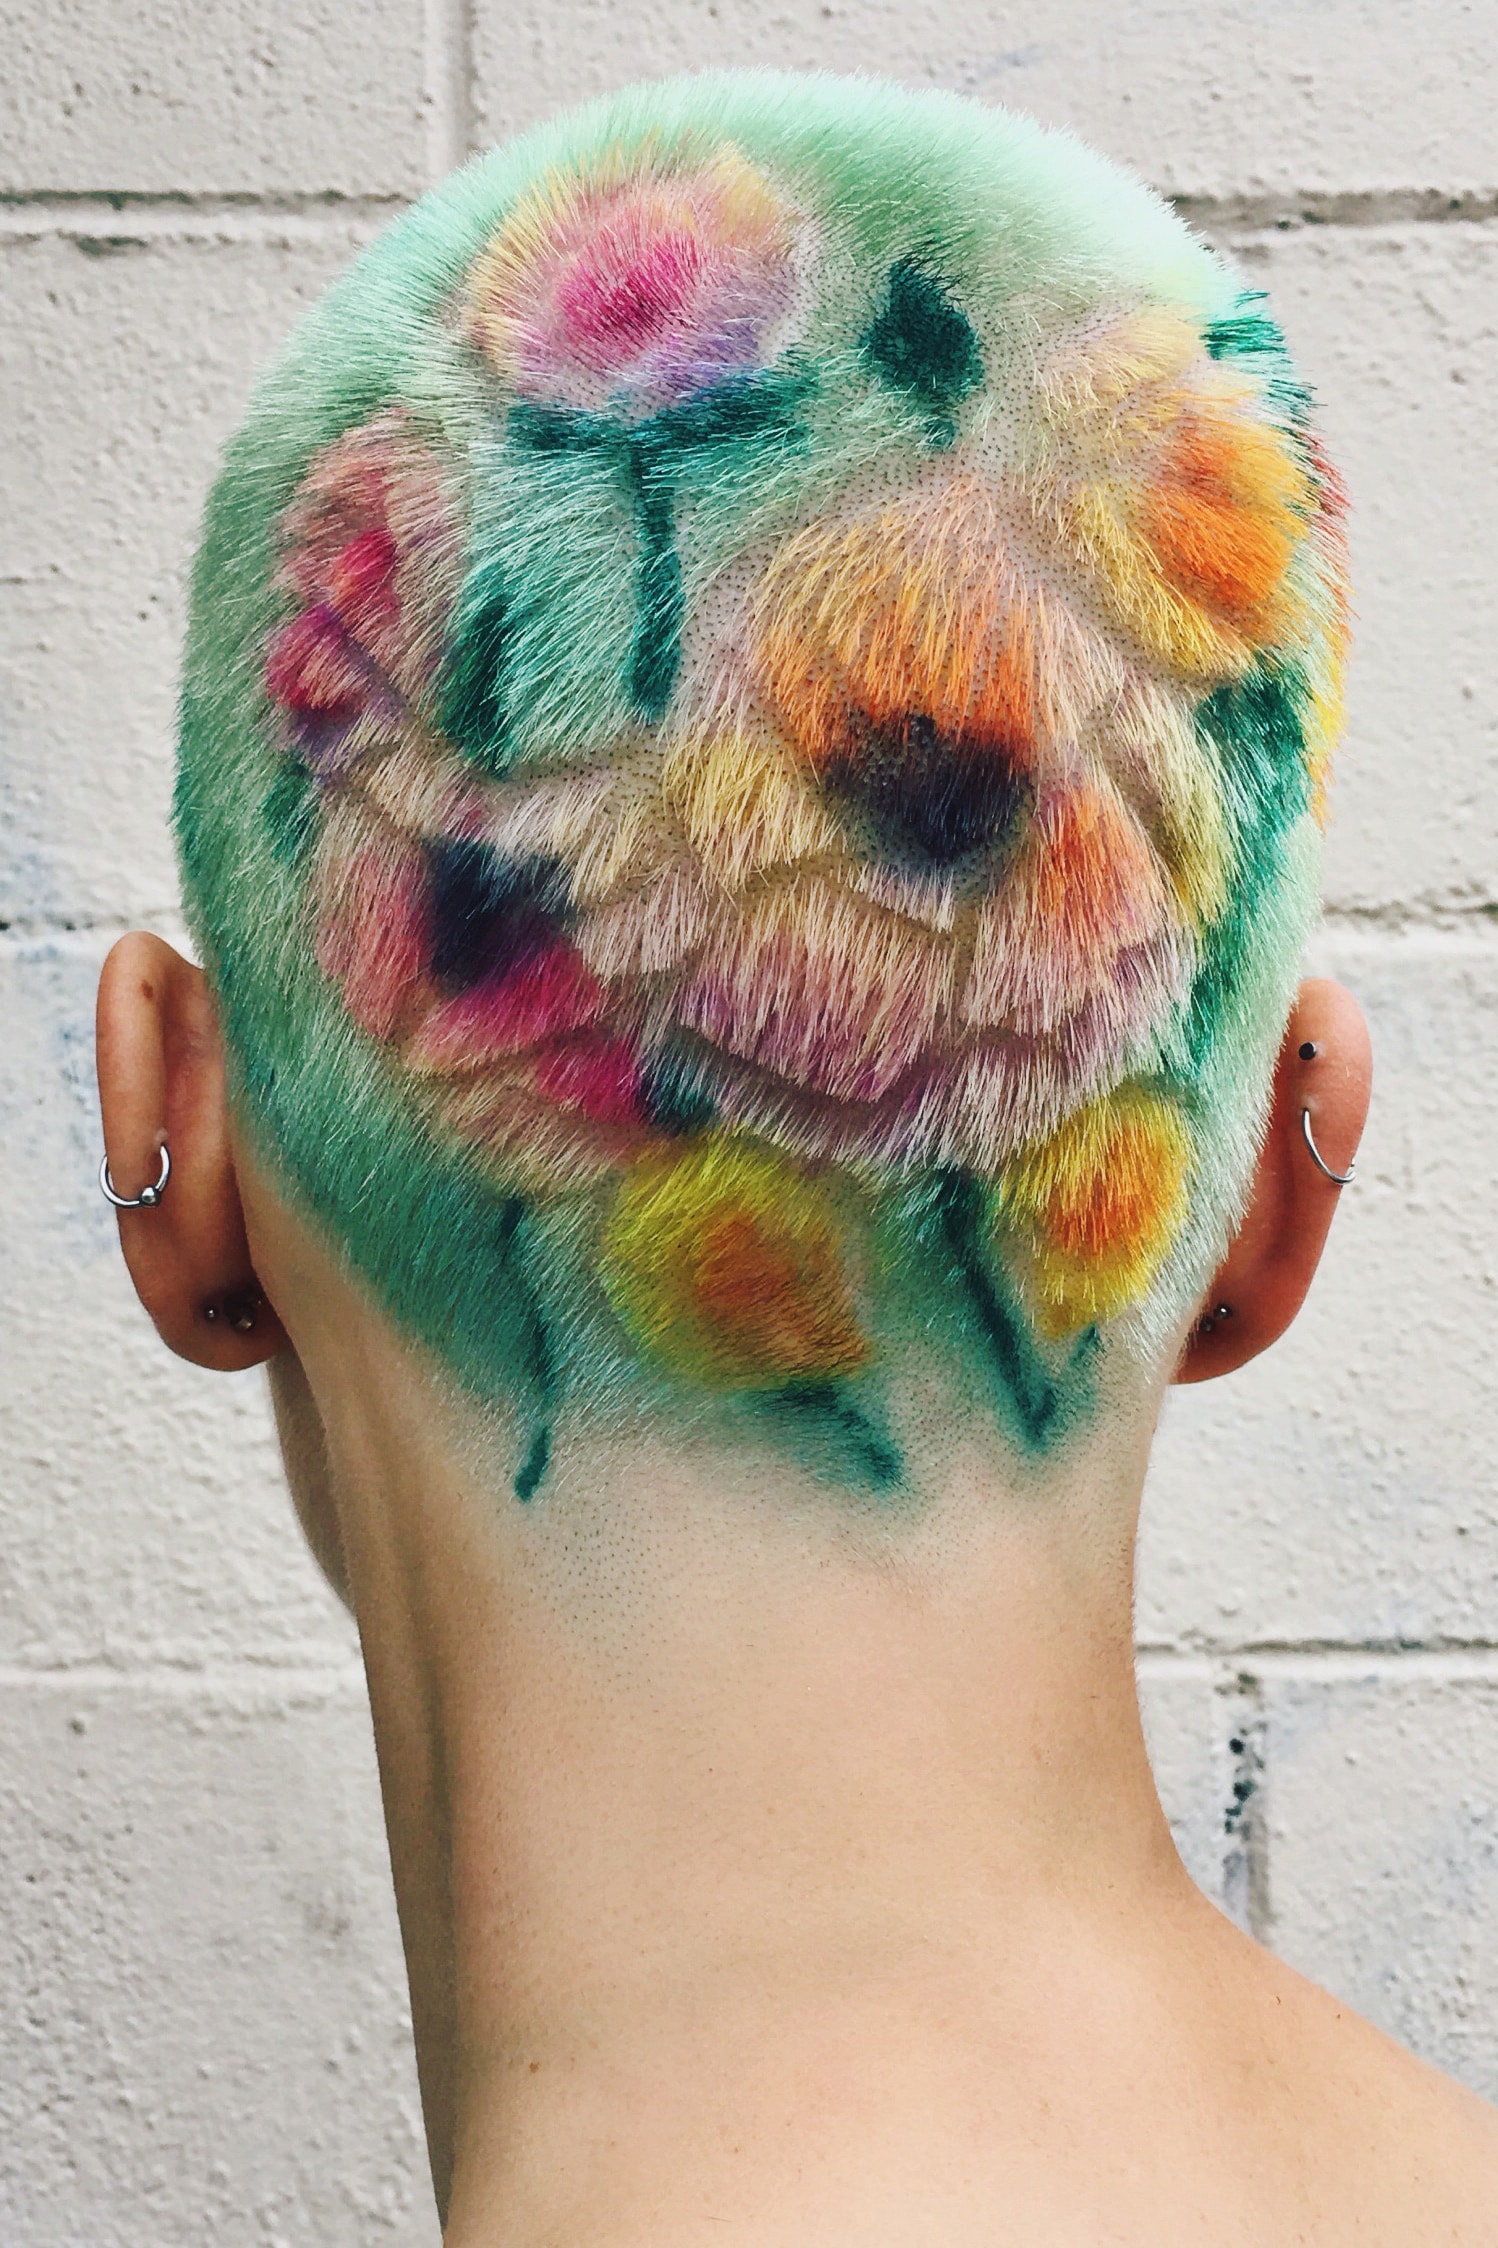 「頭髮有點像指紋，是每個人獨特的象徵」| 專訪髮型藝術家 Janine Ker